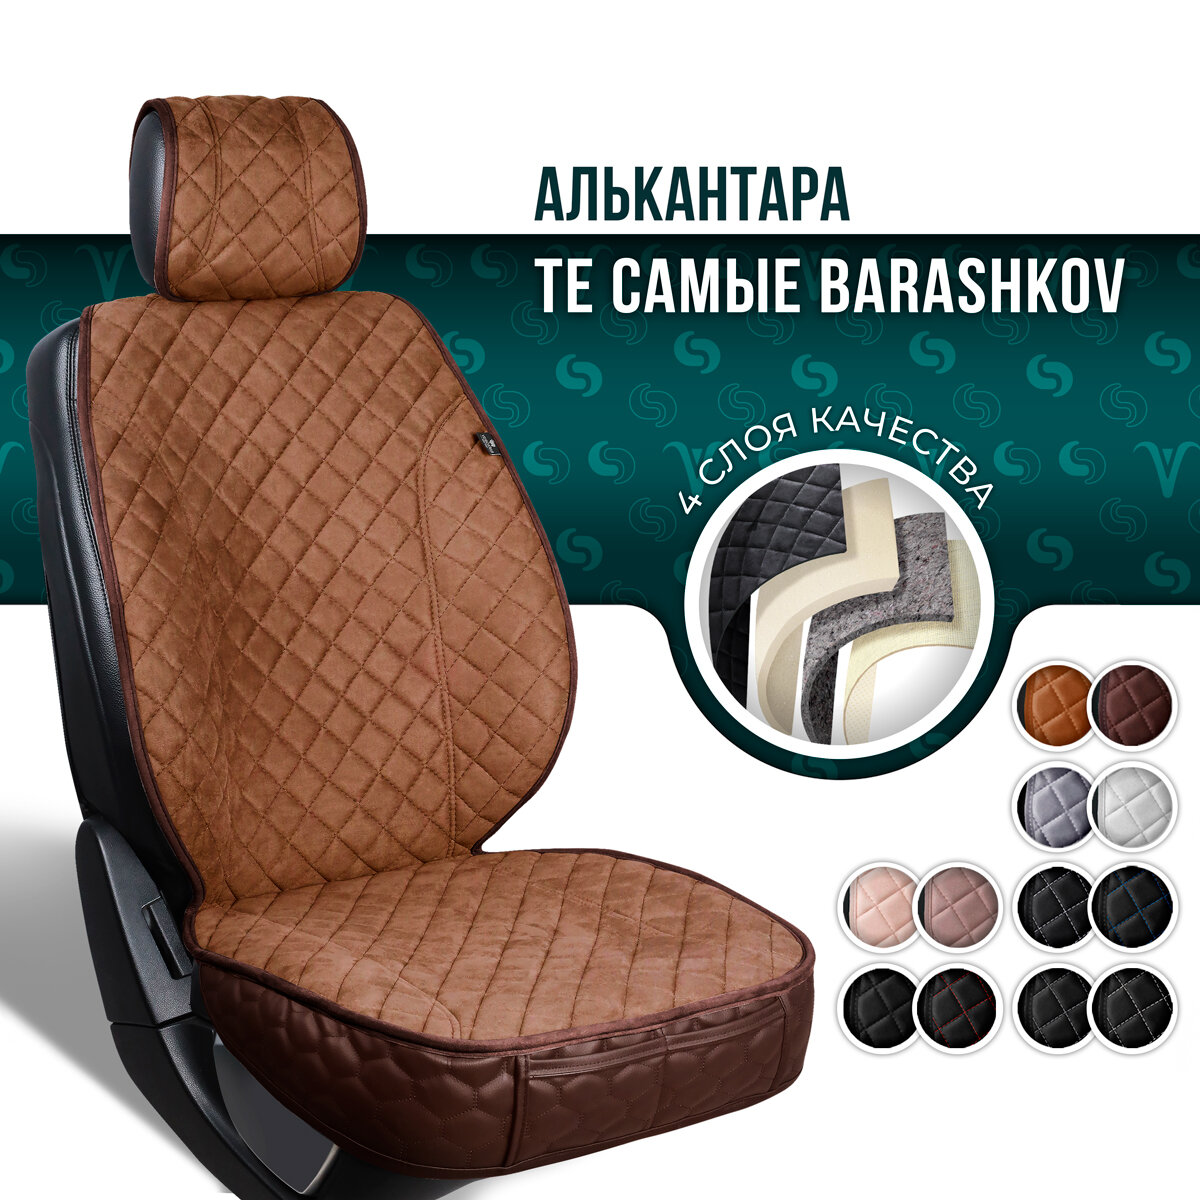 BARASHKOV/ Накидка на сиденье автомобиля из алькантары с боками и юбкой. Модель XL/ Коричневый